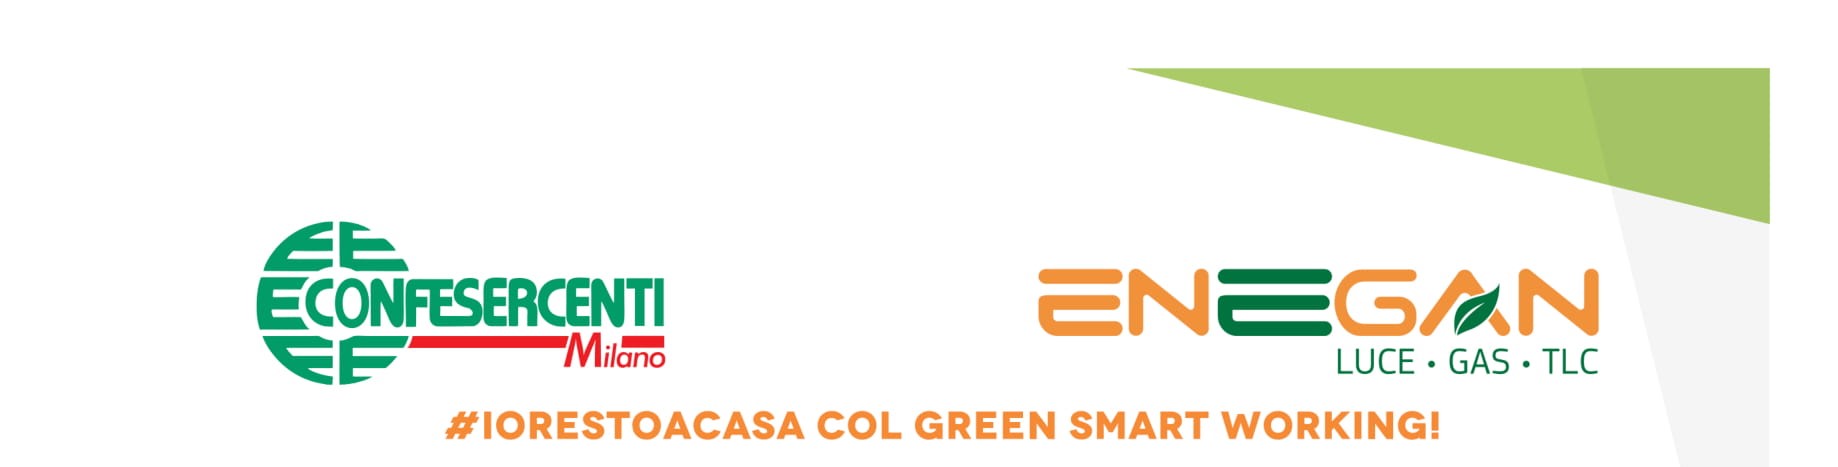 Confesercenti Milano ed ENEGAN: #IoRestoaCasa col Green Smart Working